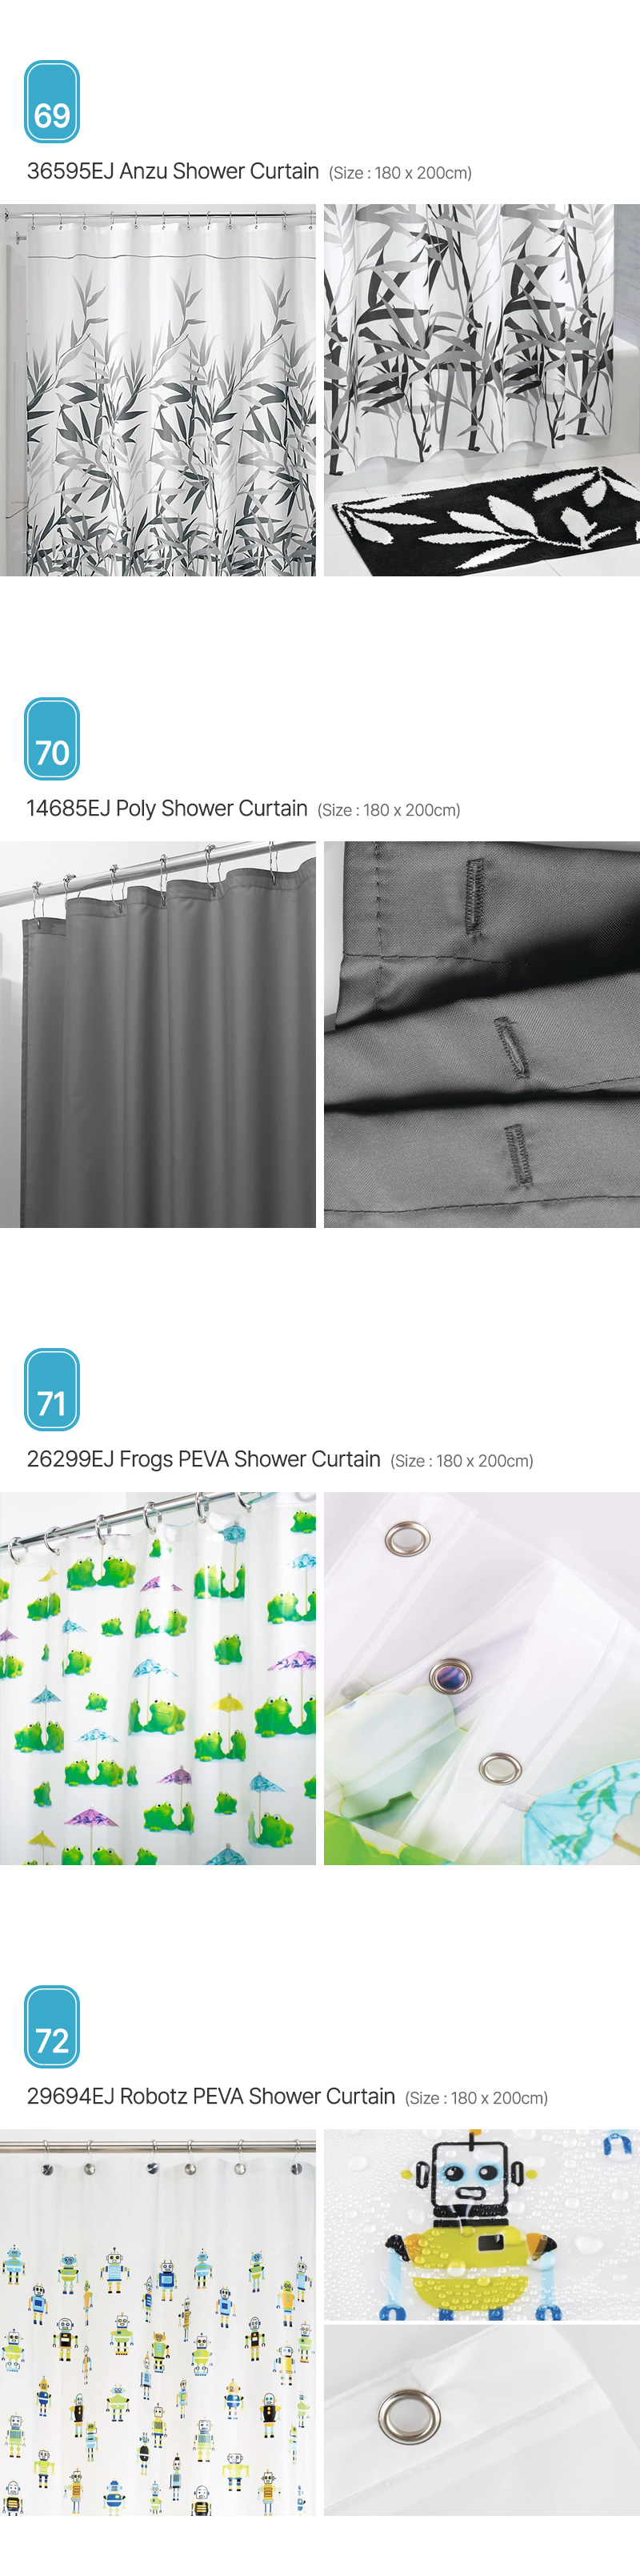 Aria_Shower-Curtain_18.jpg